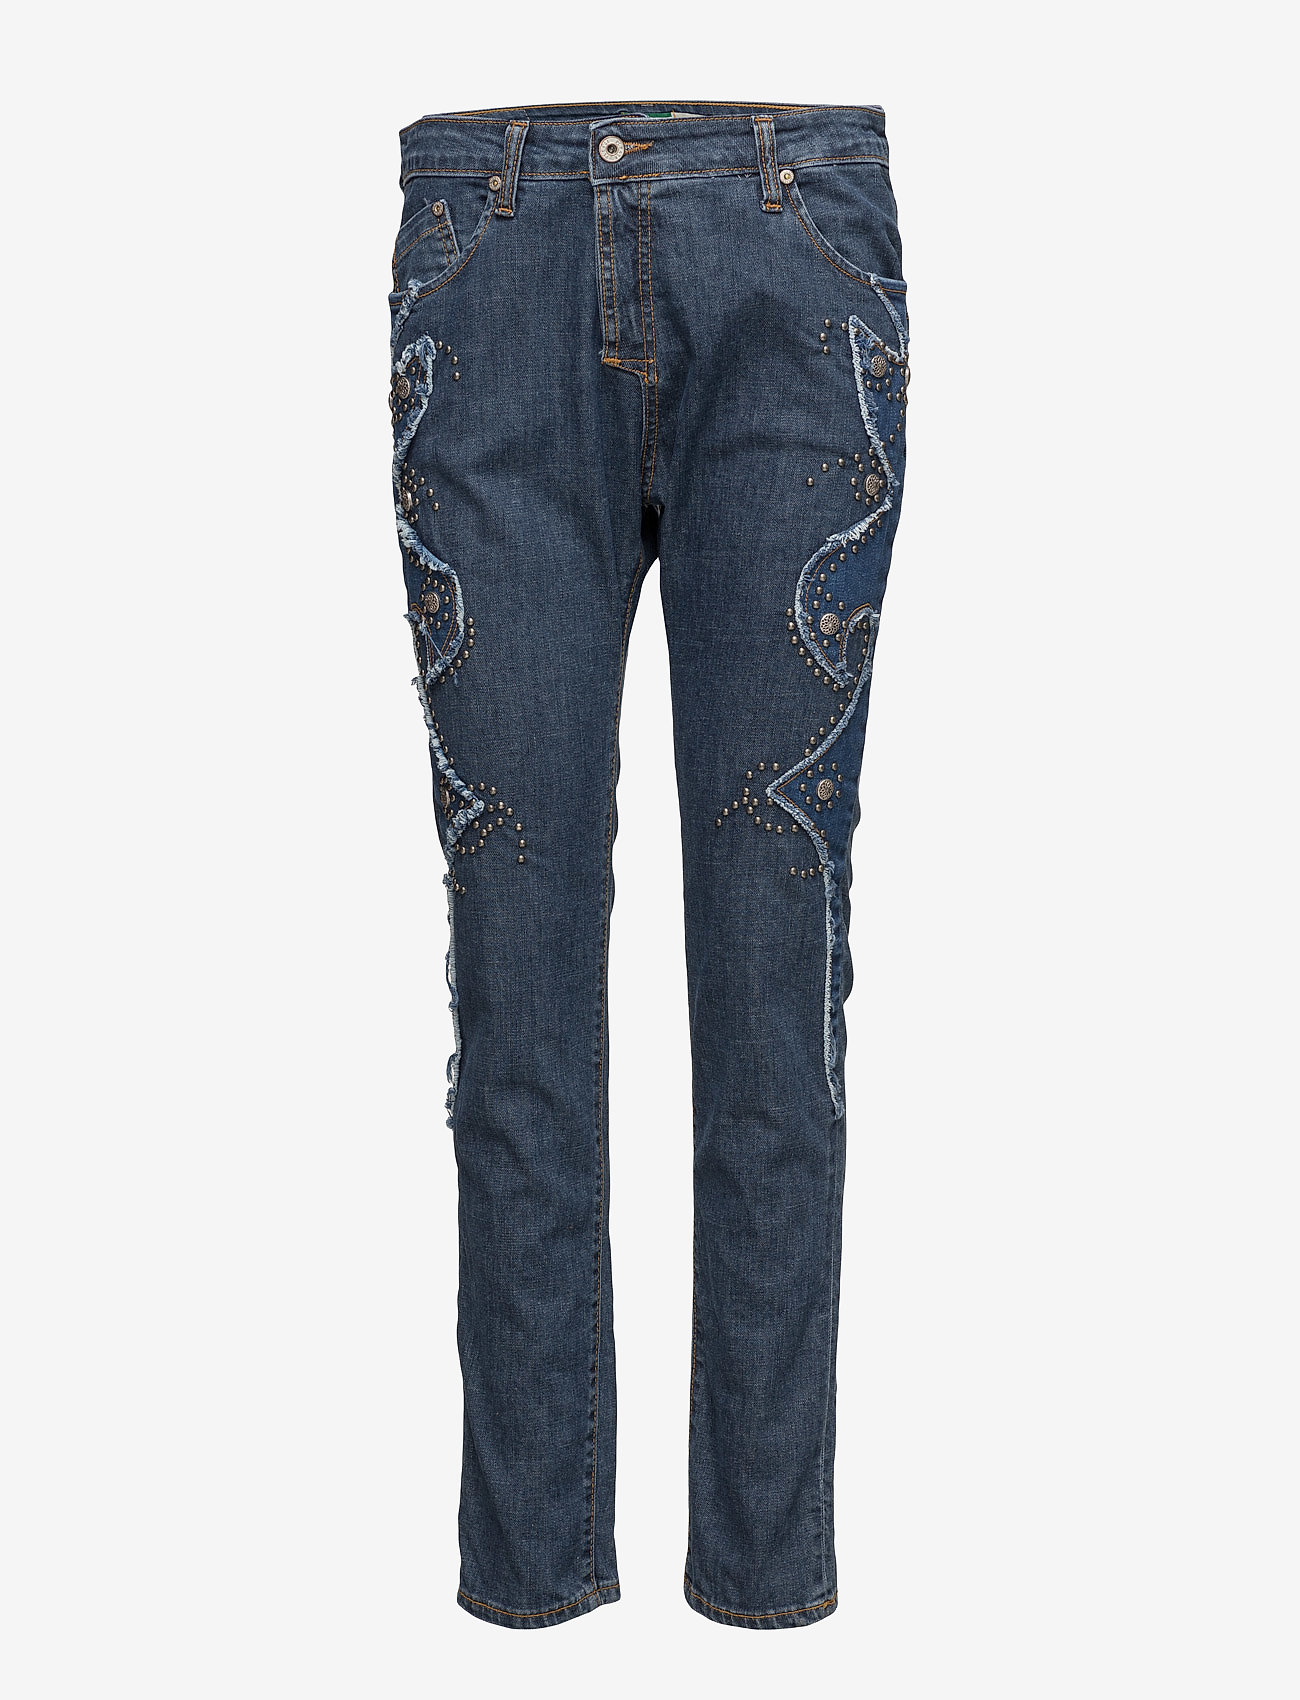 Please Jeans - Fine Western - tiesaus kirpimo džinsai - blue - 0